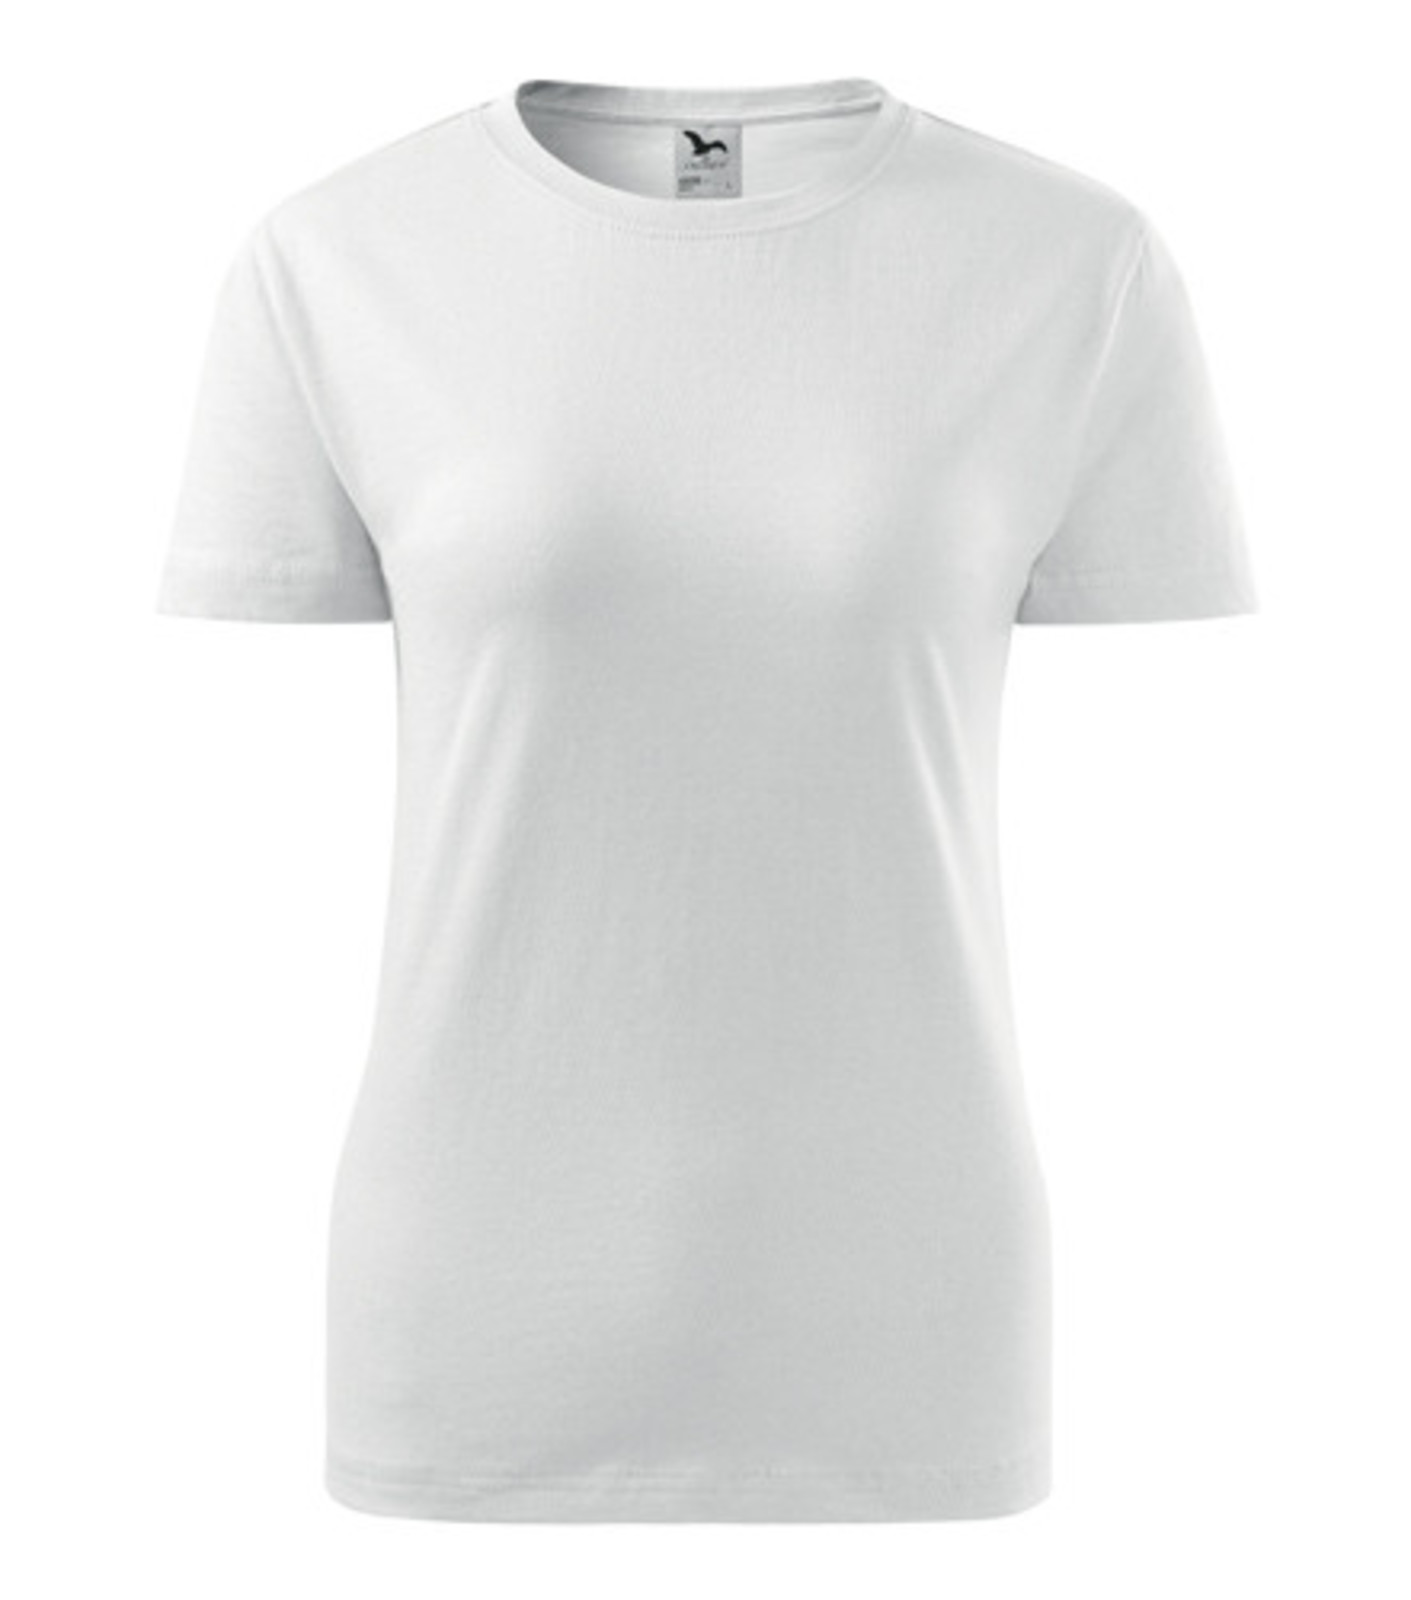 Dámske tričko Adler Classic New 133 - veľkosť: XS, farba: biela